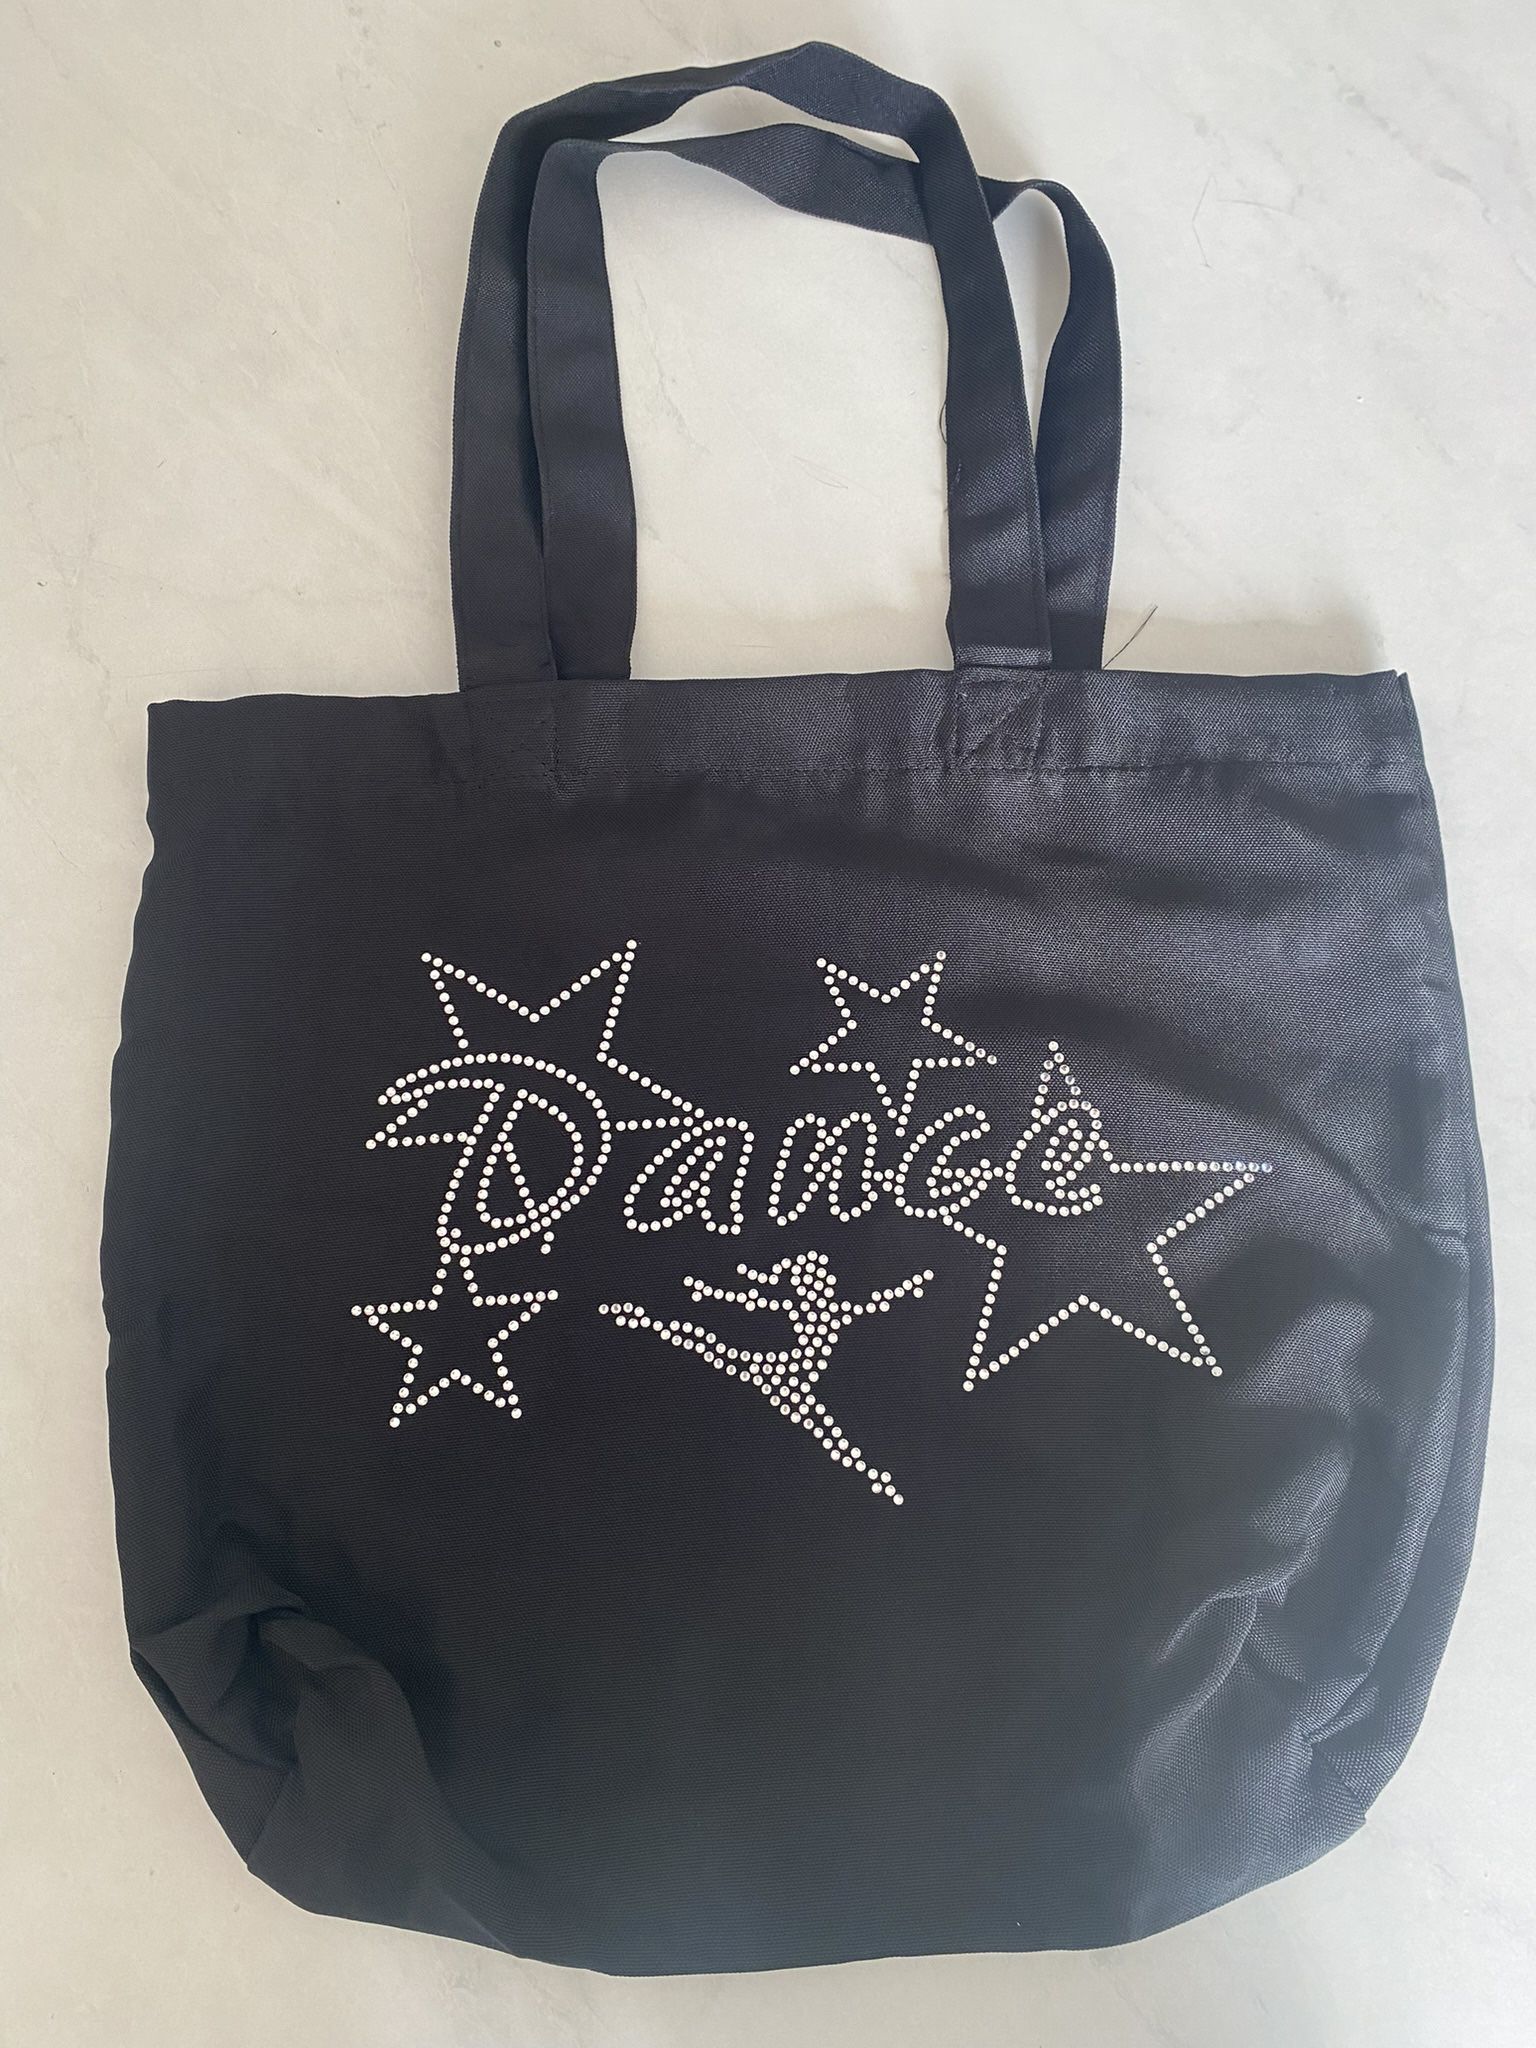 Dance Tote Bag